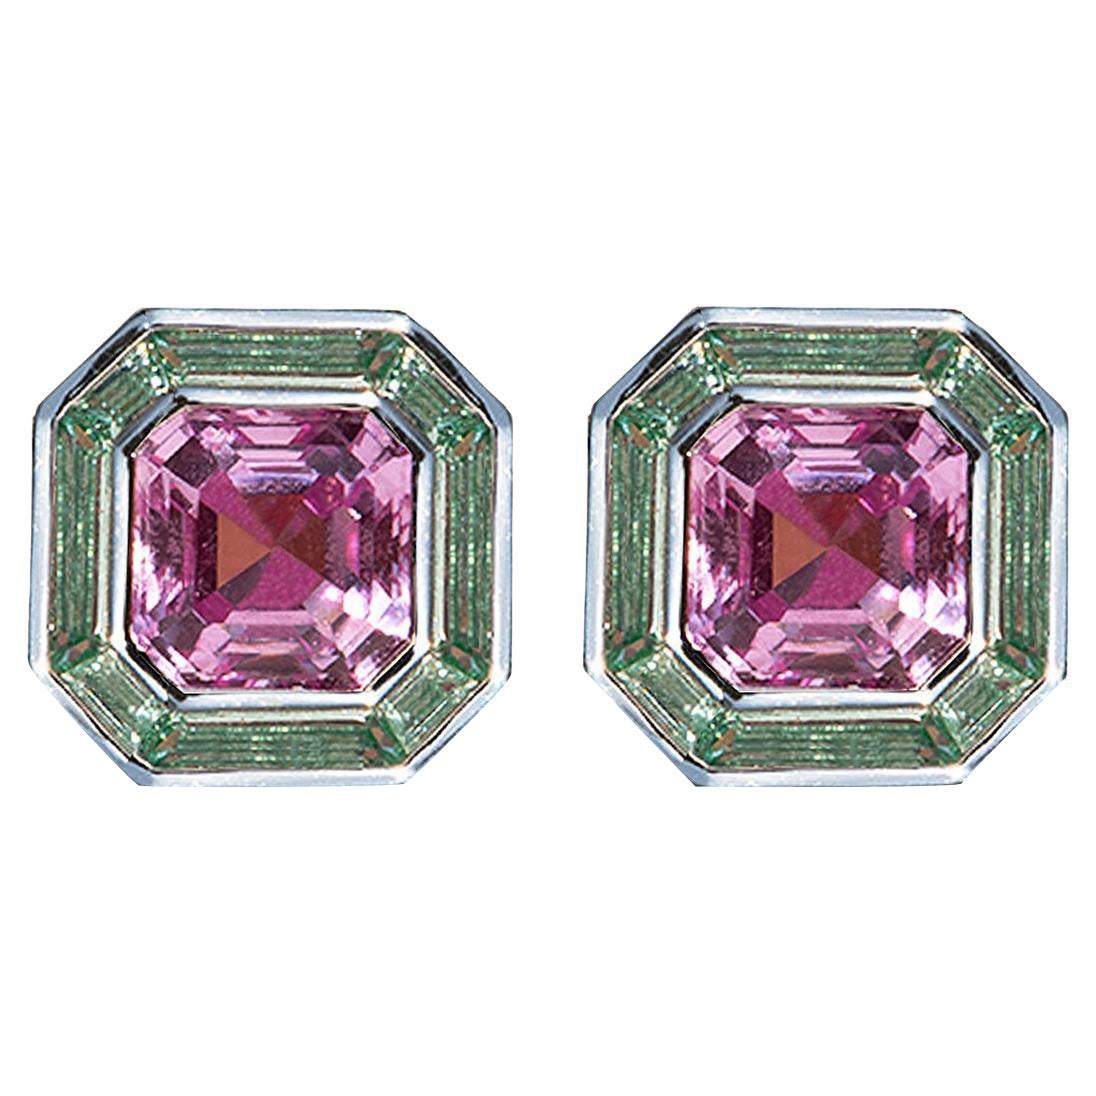 Luminous Asscher Stud Earrings, Pink & Green Sapphire, Silver, 5.40ct